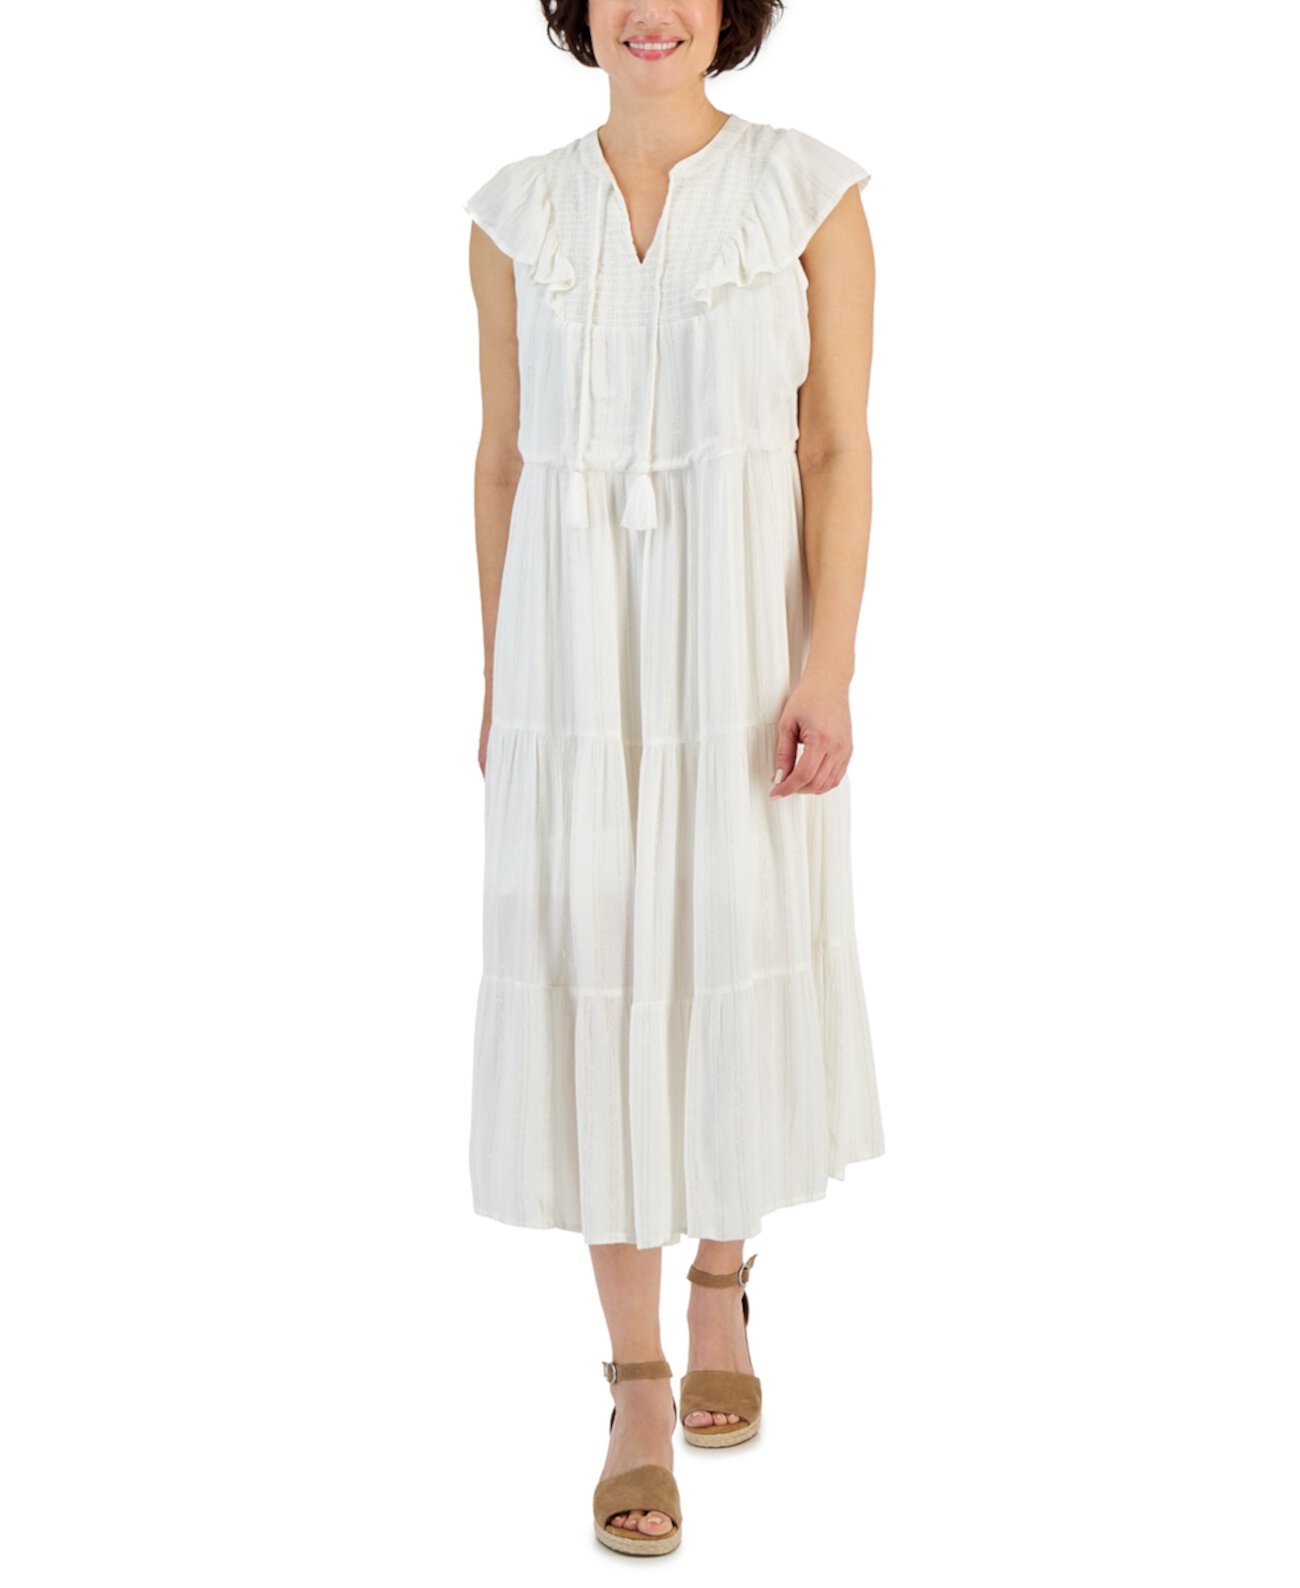 Миниатюрное блестящее платье миди с оборками, созданное для Macy's Style & Co